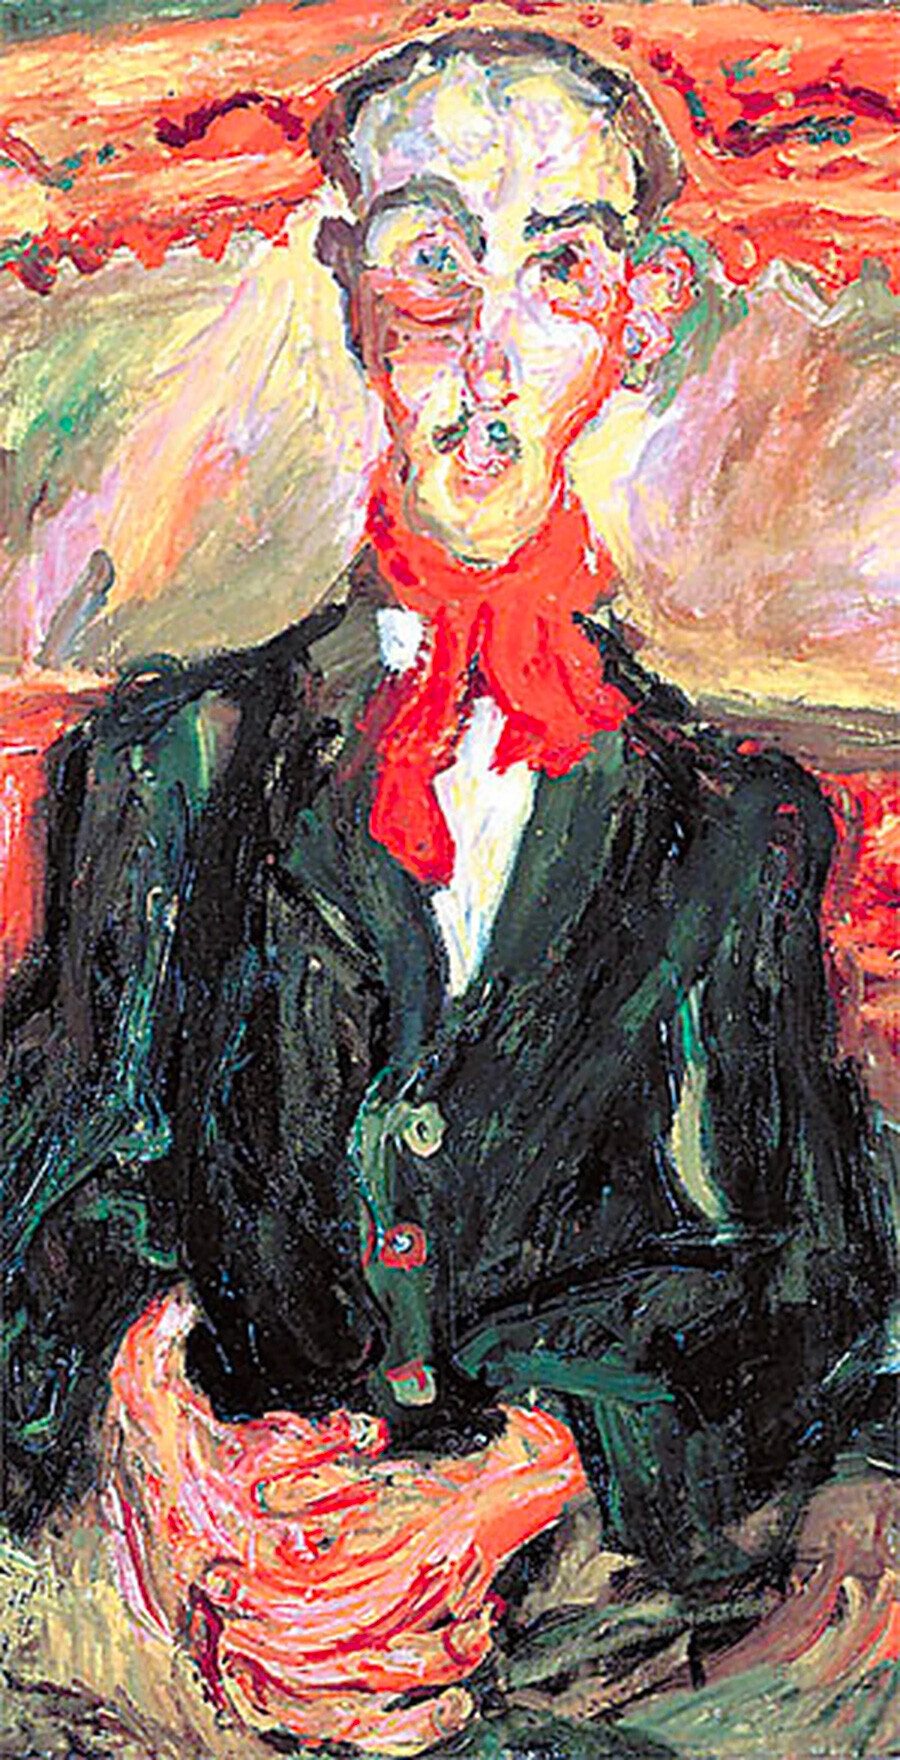 Chaïm Soutine. Homem com Echarpe Vermelha, 1921.

